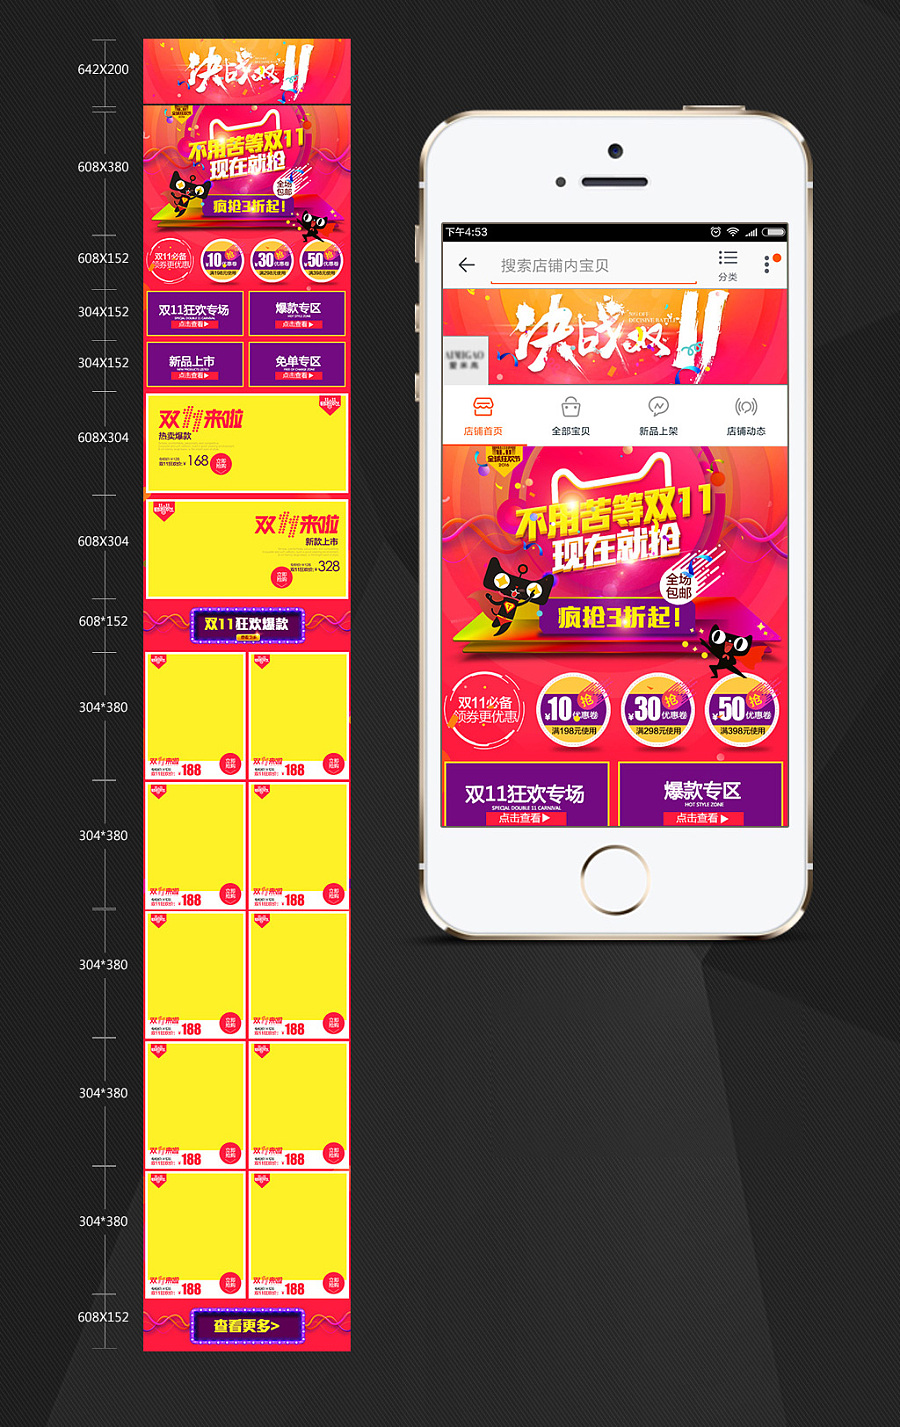 2016天猫淘宝双11狂欢节手机端首页设计系列